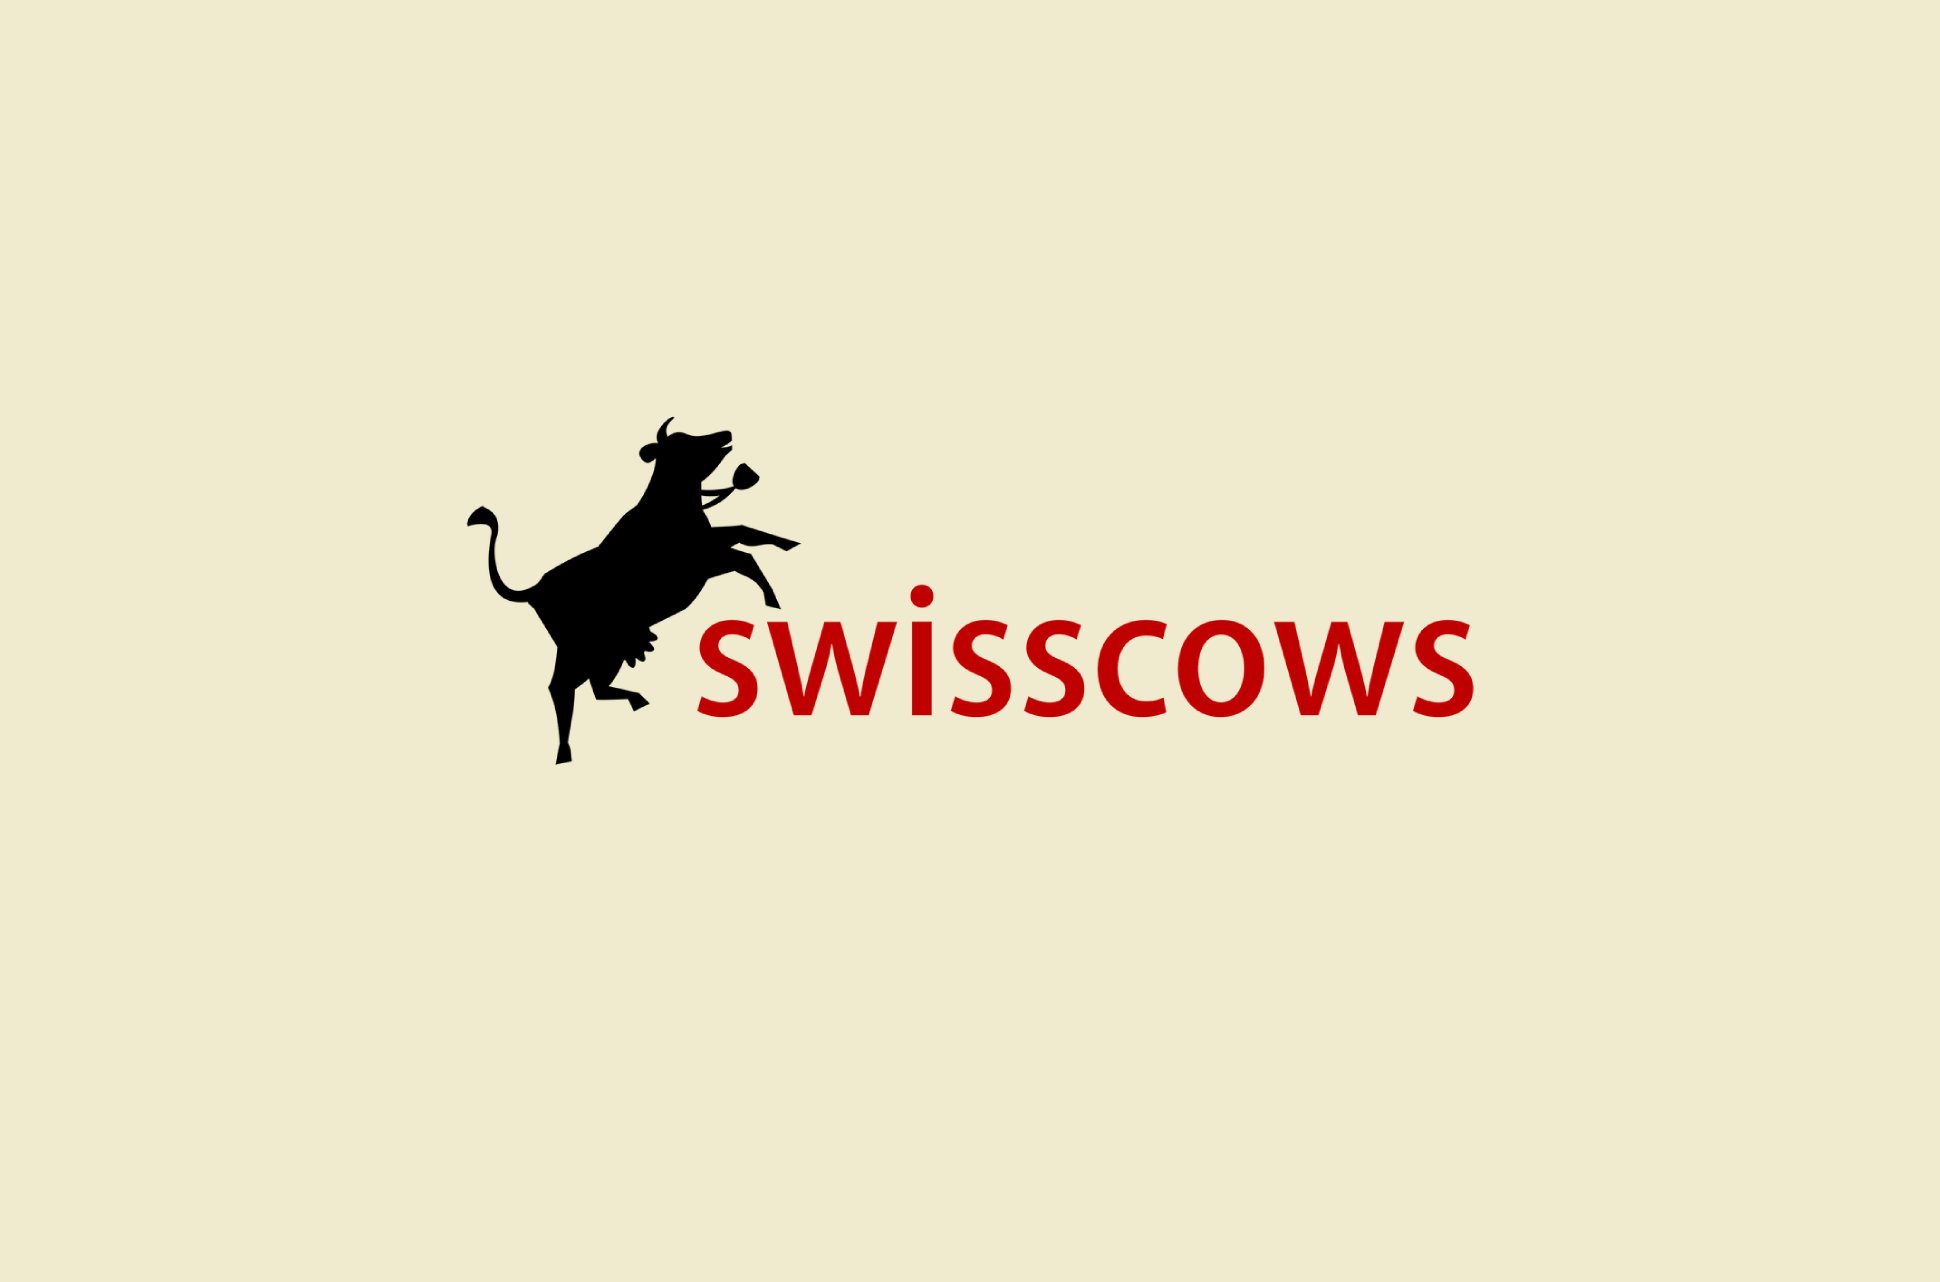 Swisscows logo.